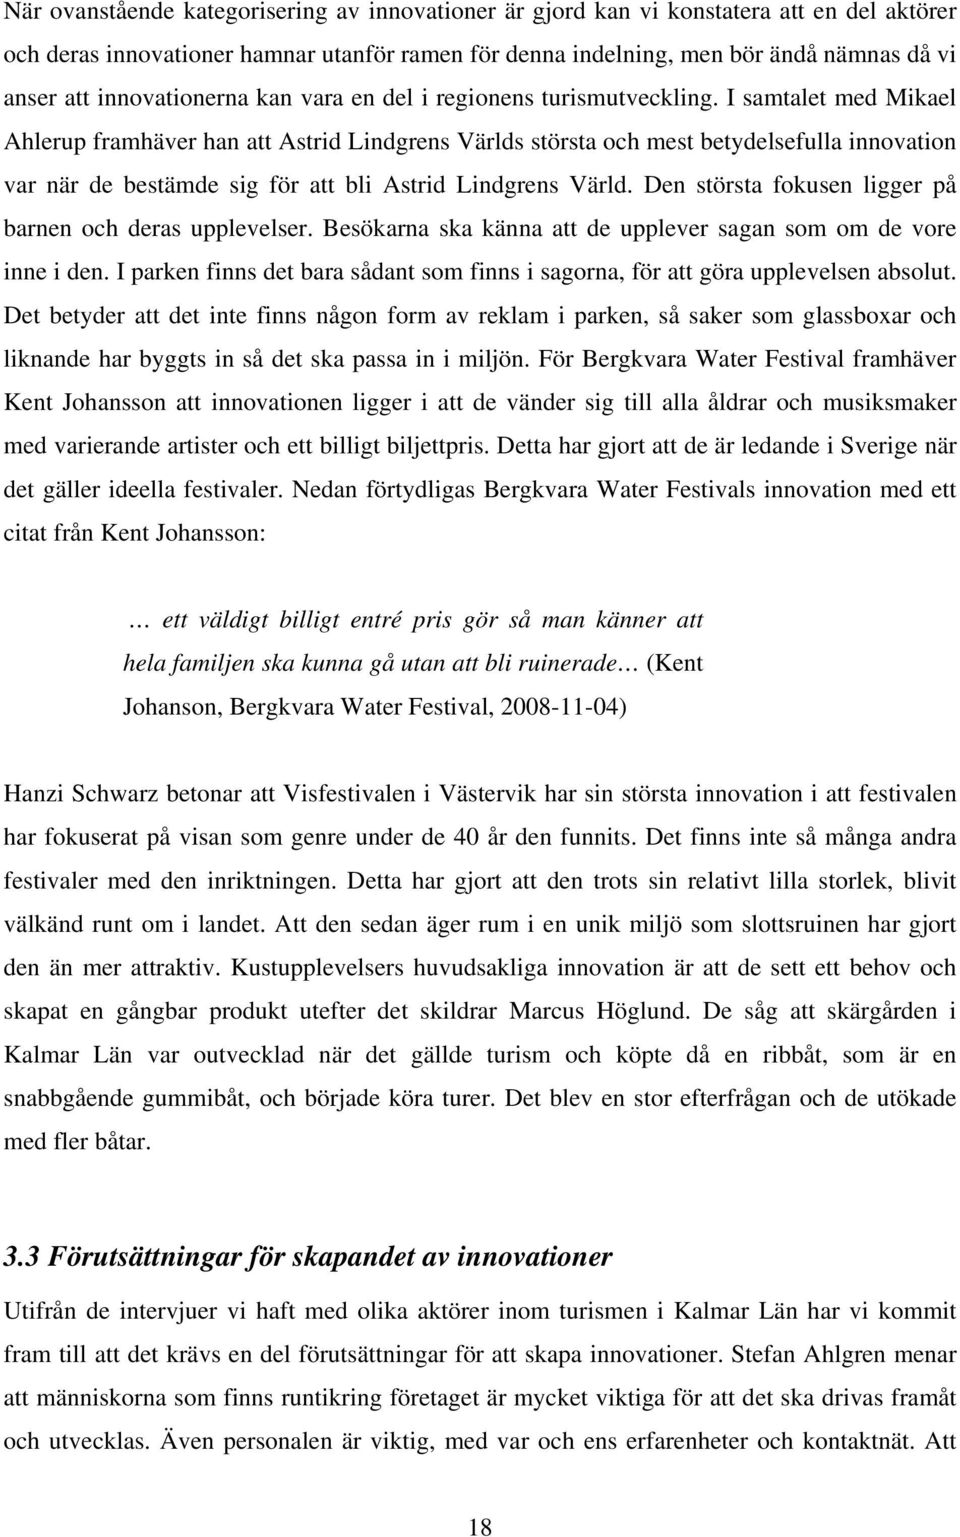 I samtalet med Mikael Ahlerup framhäver han att Astrid Lindgrens Världs största och mest betydelsefulla innovation var när de bestämde sig för att bli Astrid Lindgrens Värld.